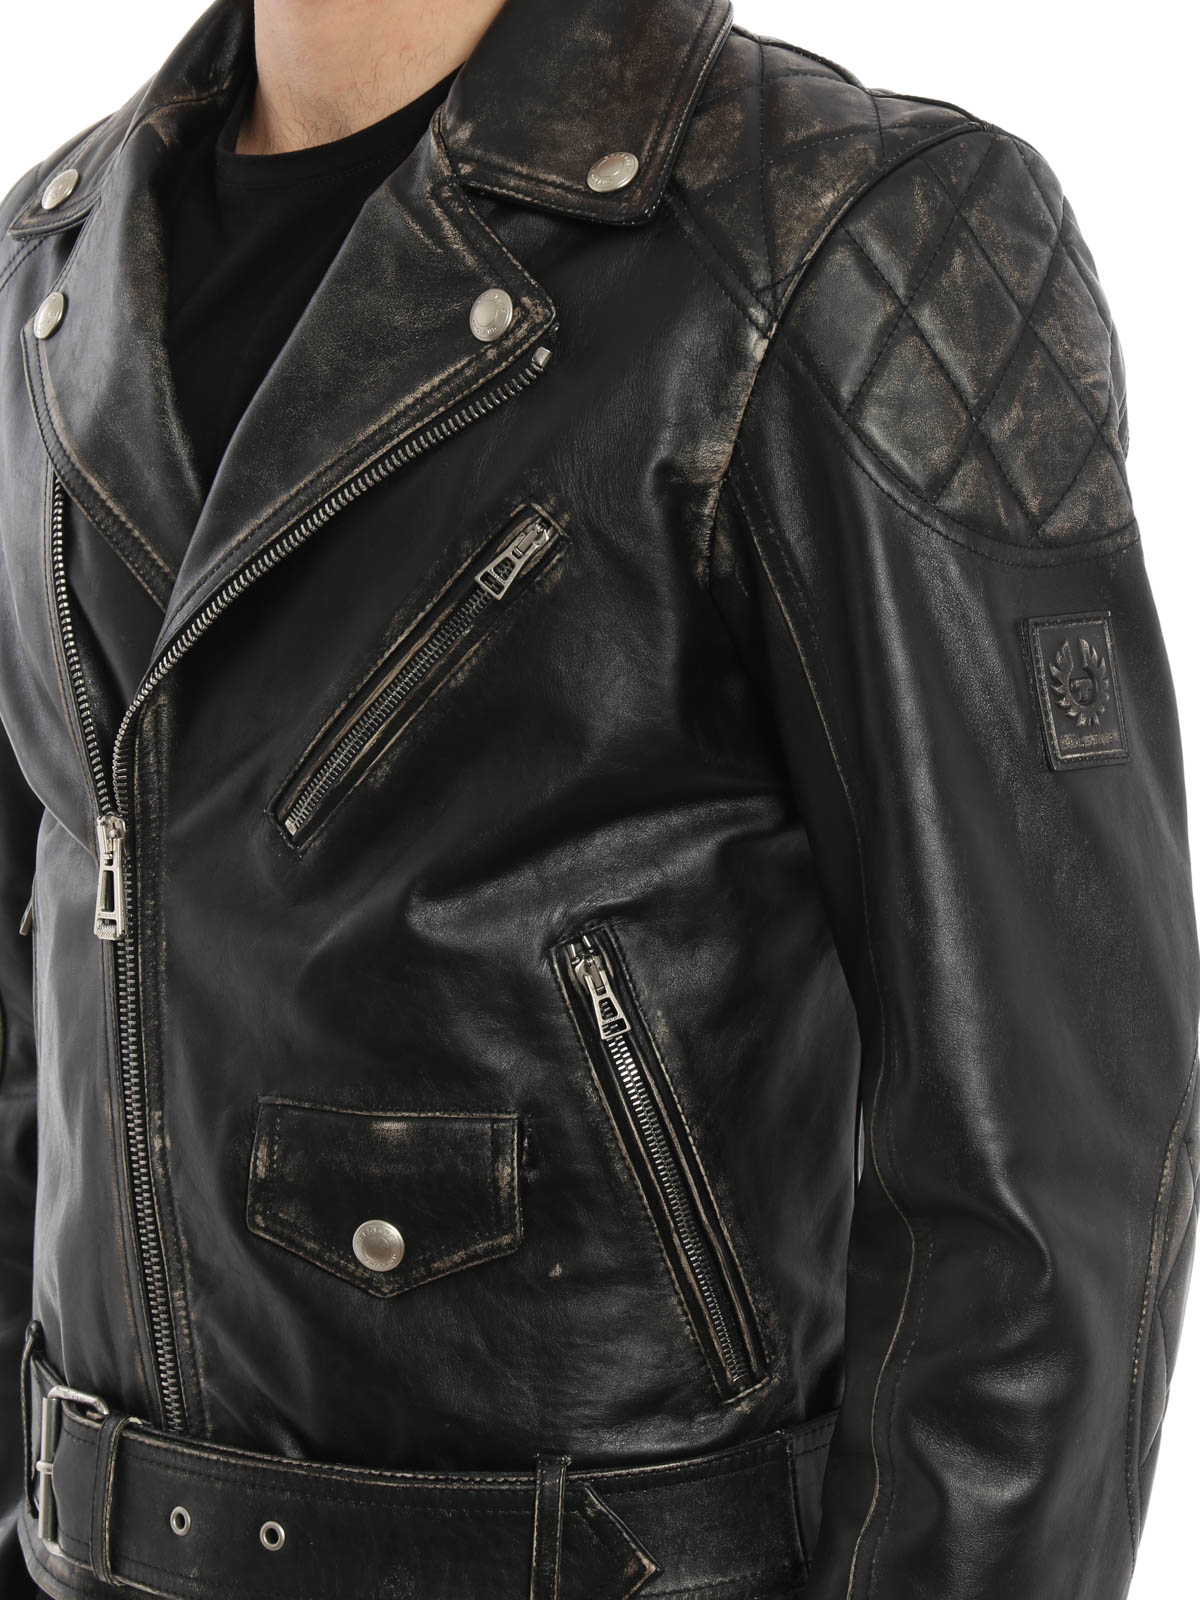 kleuring vergroting gewicht Leather jacket Belstaff - Arlingham leather biker jacket -  71020503L81N039490000